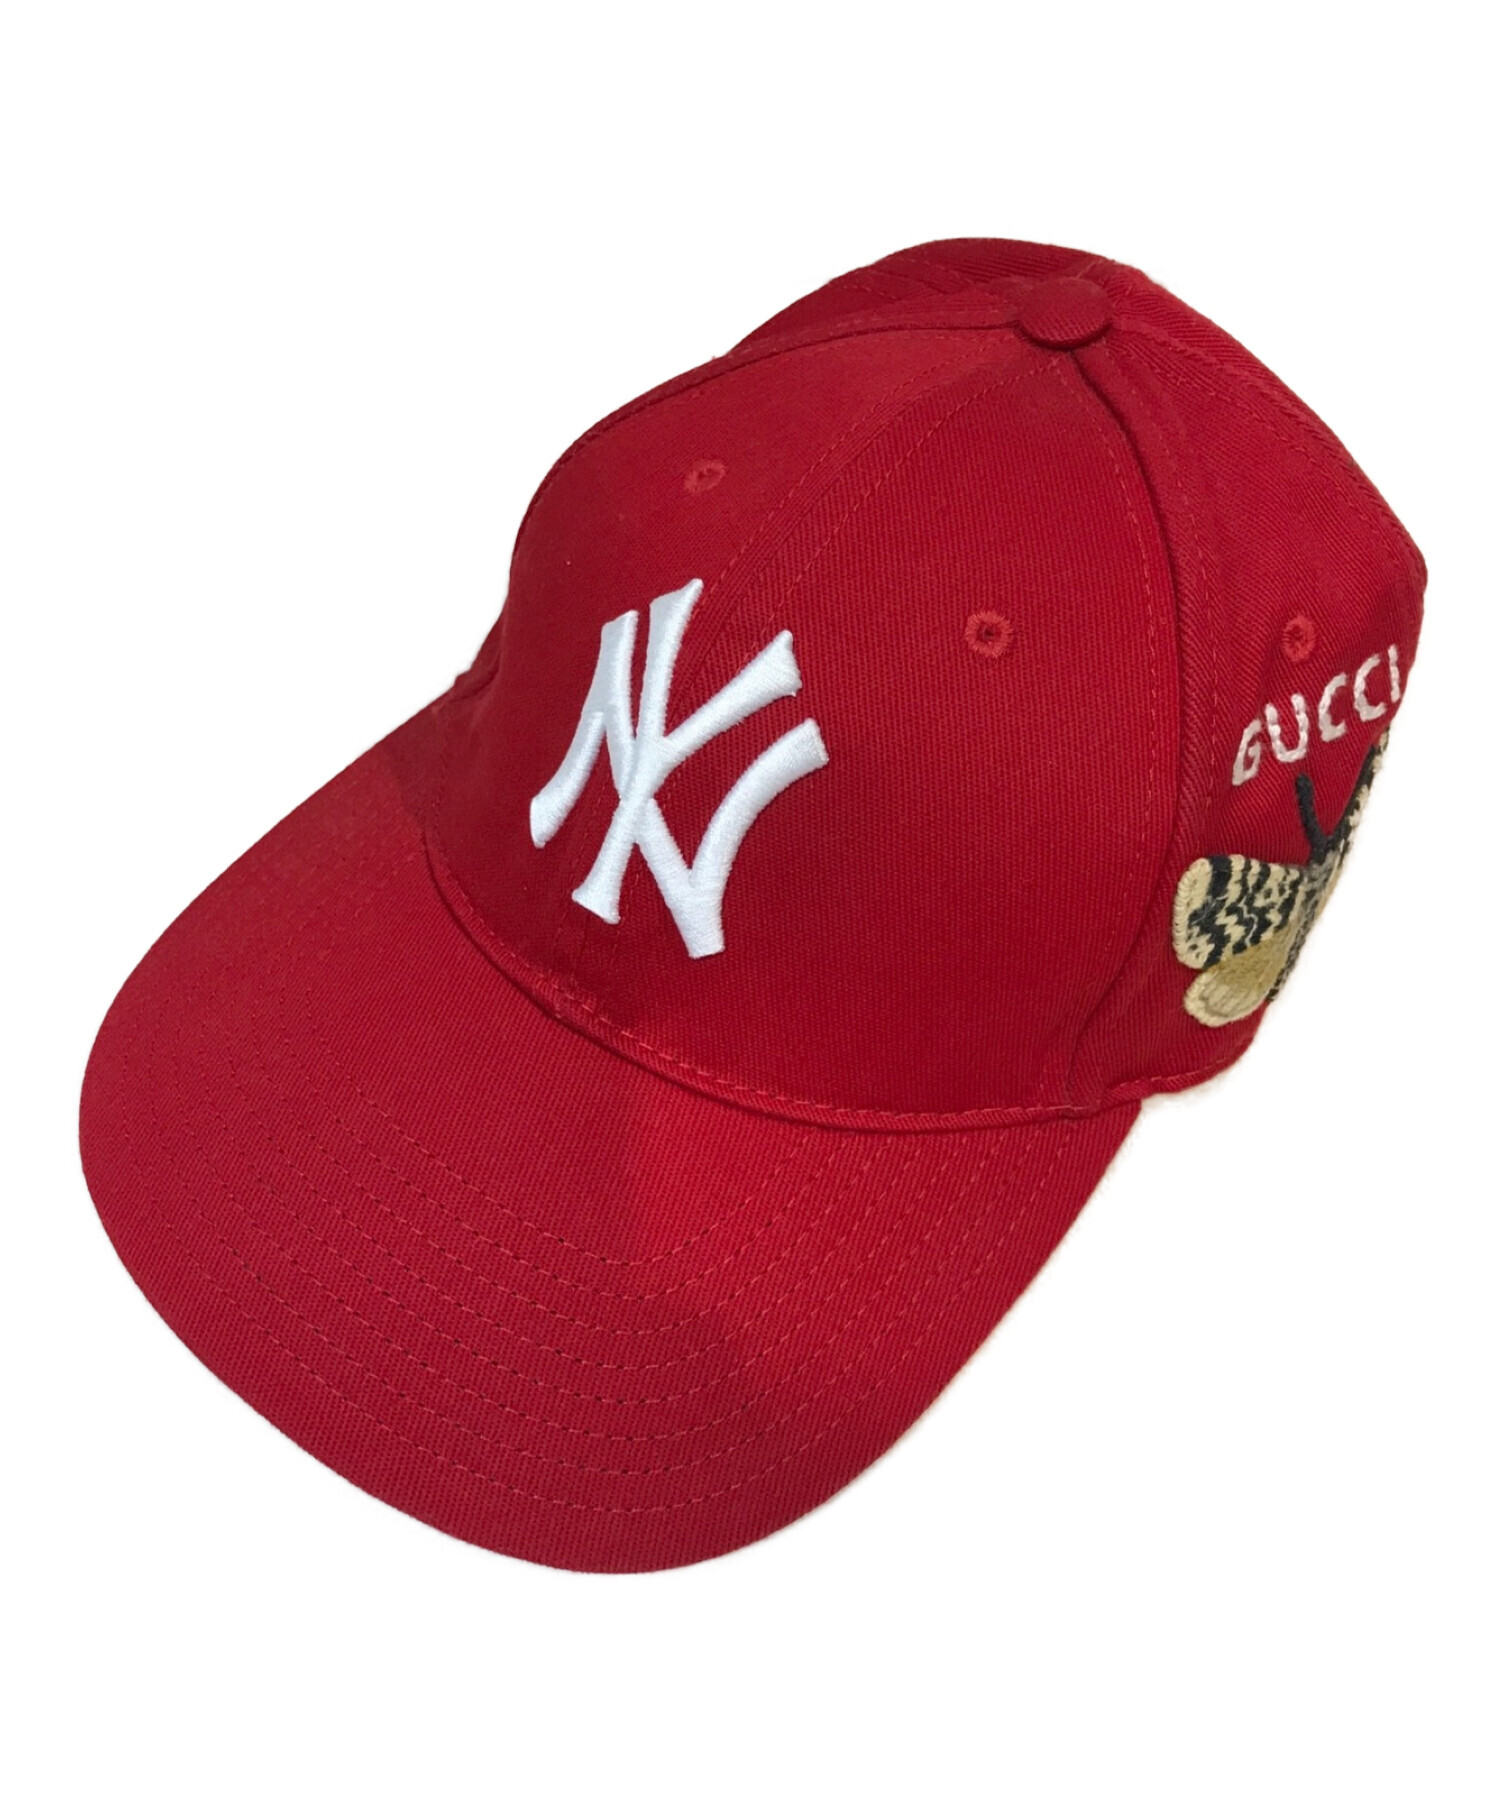 GUCCI (グッチ) NEW YORK YANKEES (ニューヨークヤンキース) バタフライ刺繍ベースボールキャップ レッド